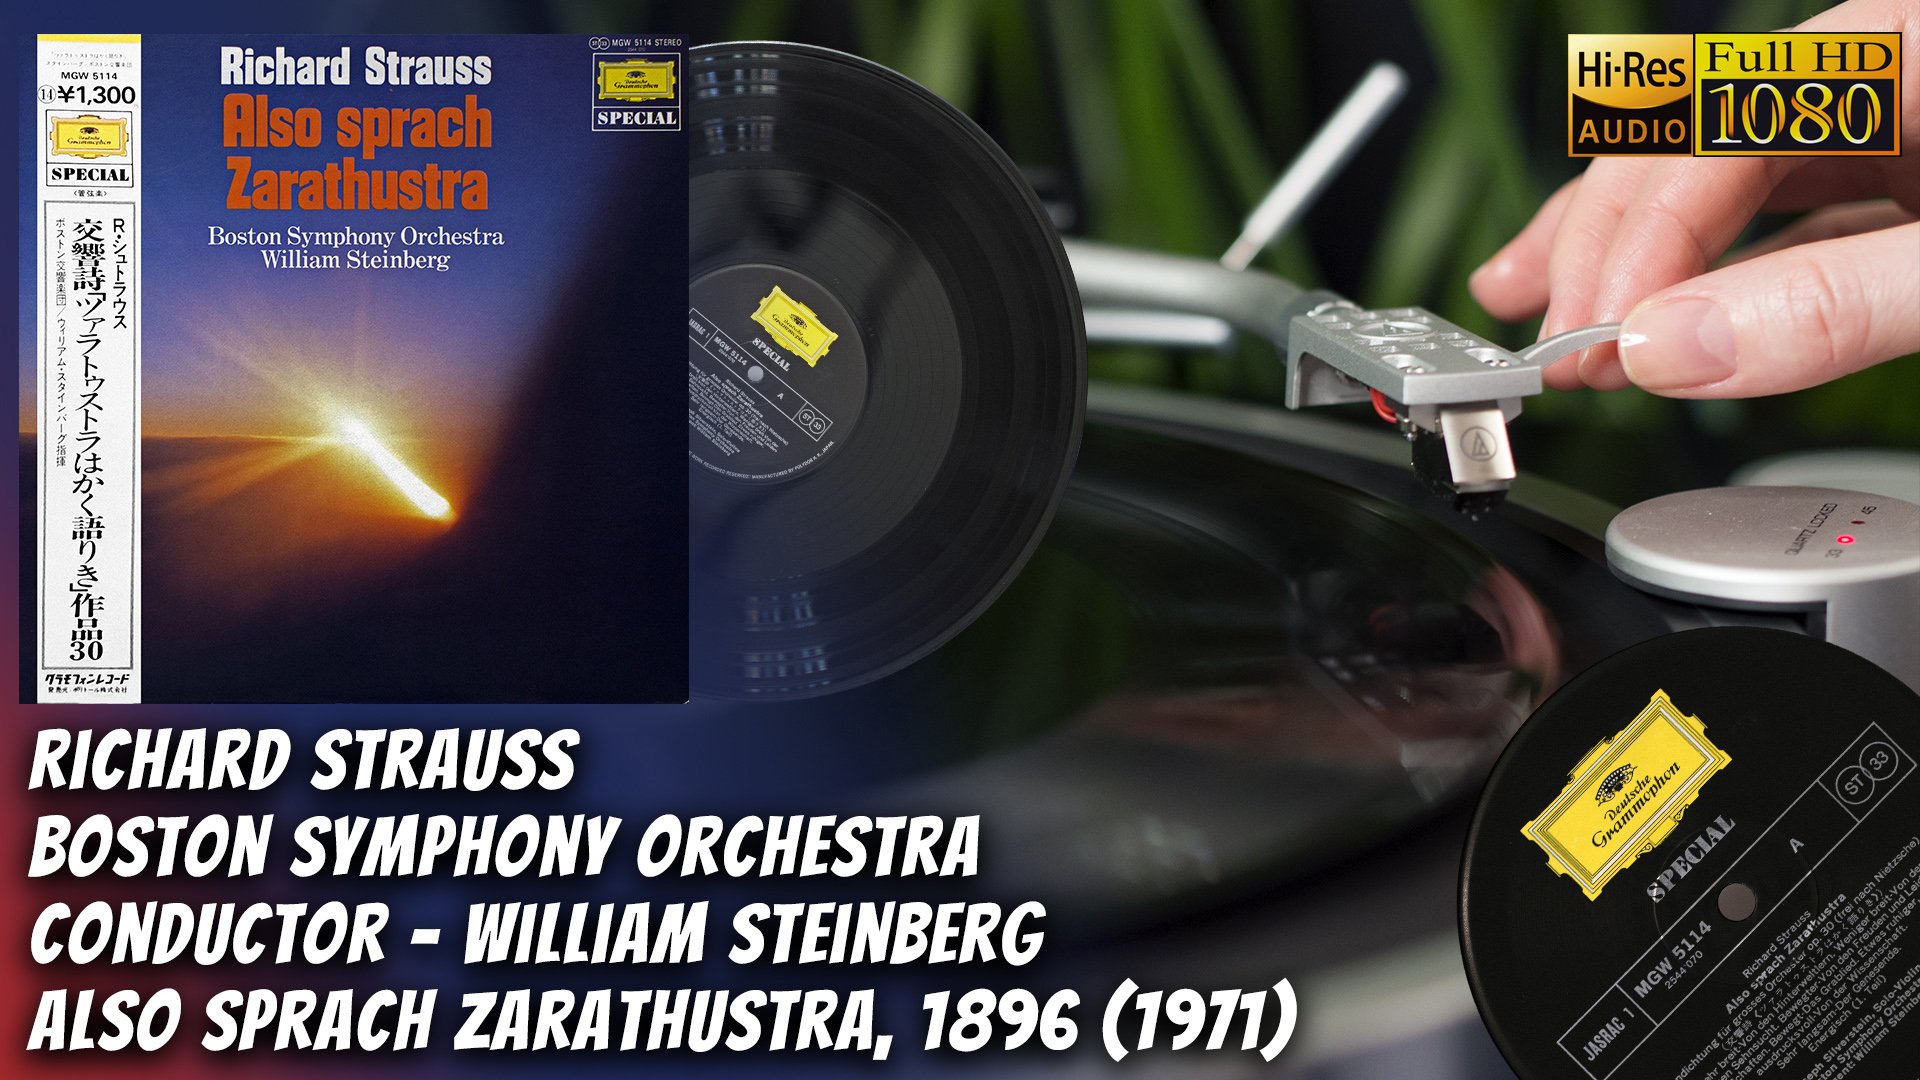 Richard Strauss Boston Symphony Orchestra Also Sprach Zarathustra, 1896 (1971) vinyl video, hi res!